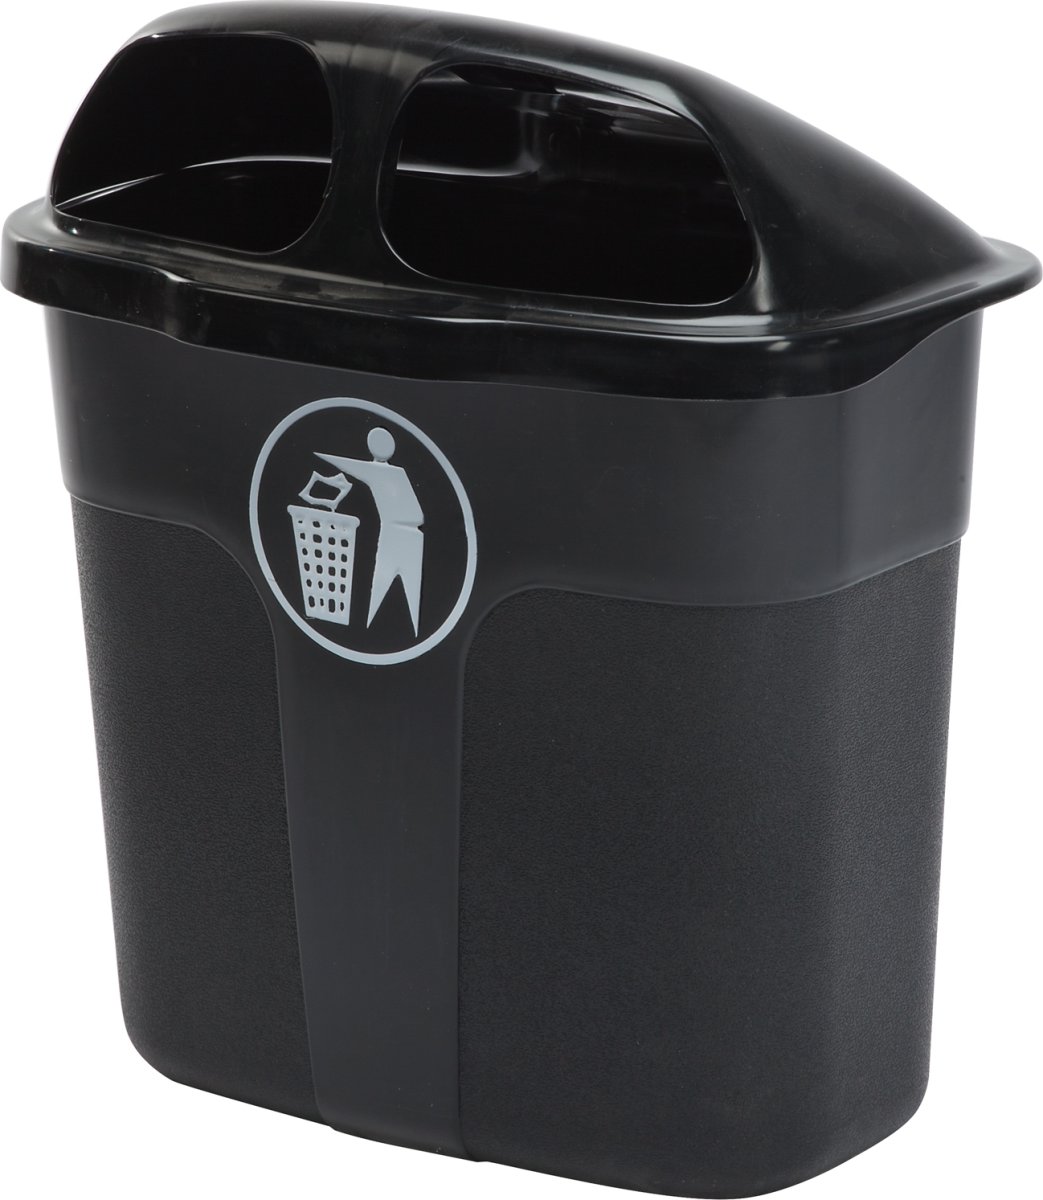 Affaldsbeholder i sort, 40 liter - Udendørs